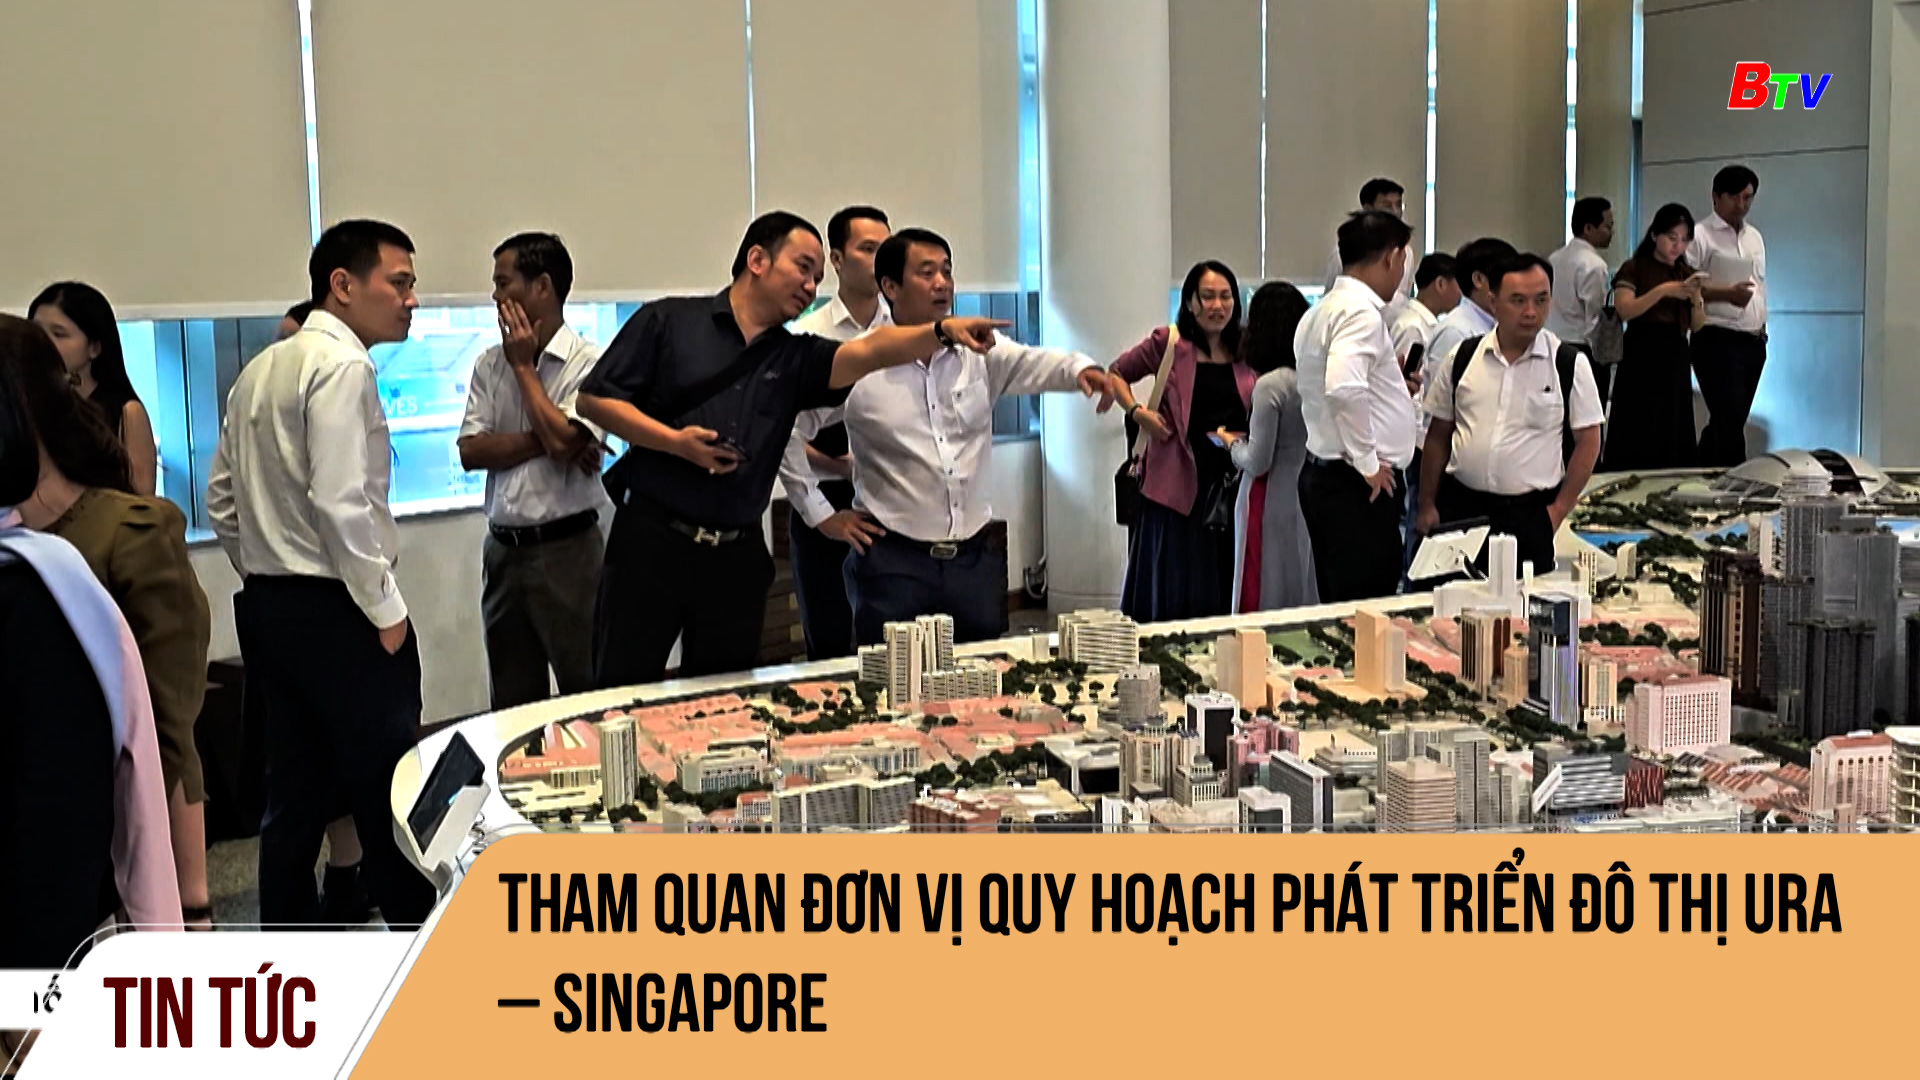 Tham quan đơn vị quy hoạch phát triển đô thị URA – Singapore